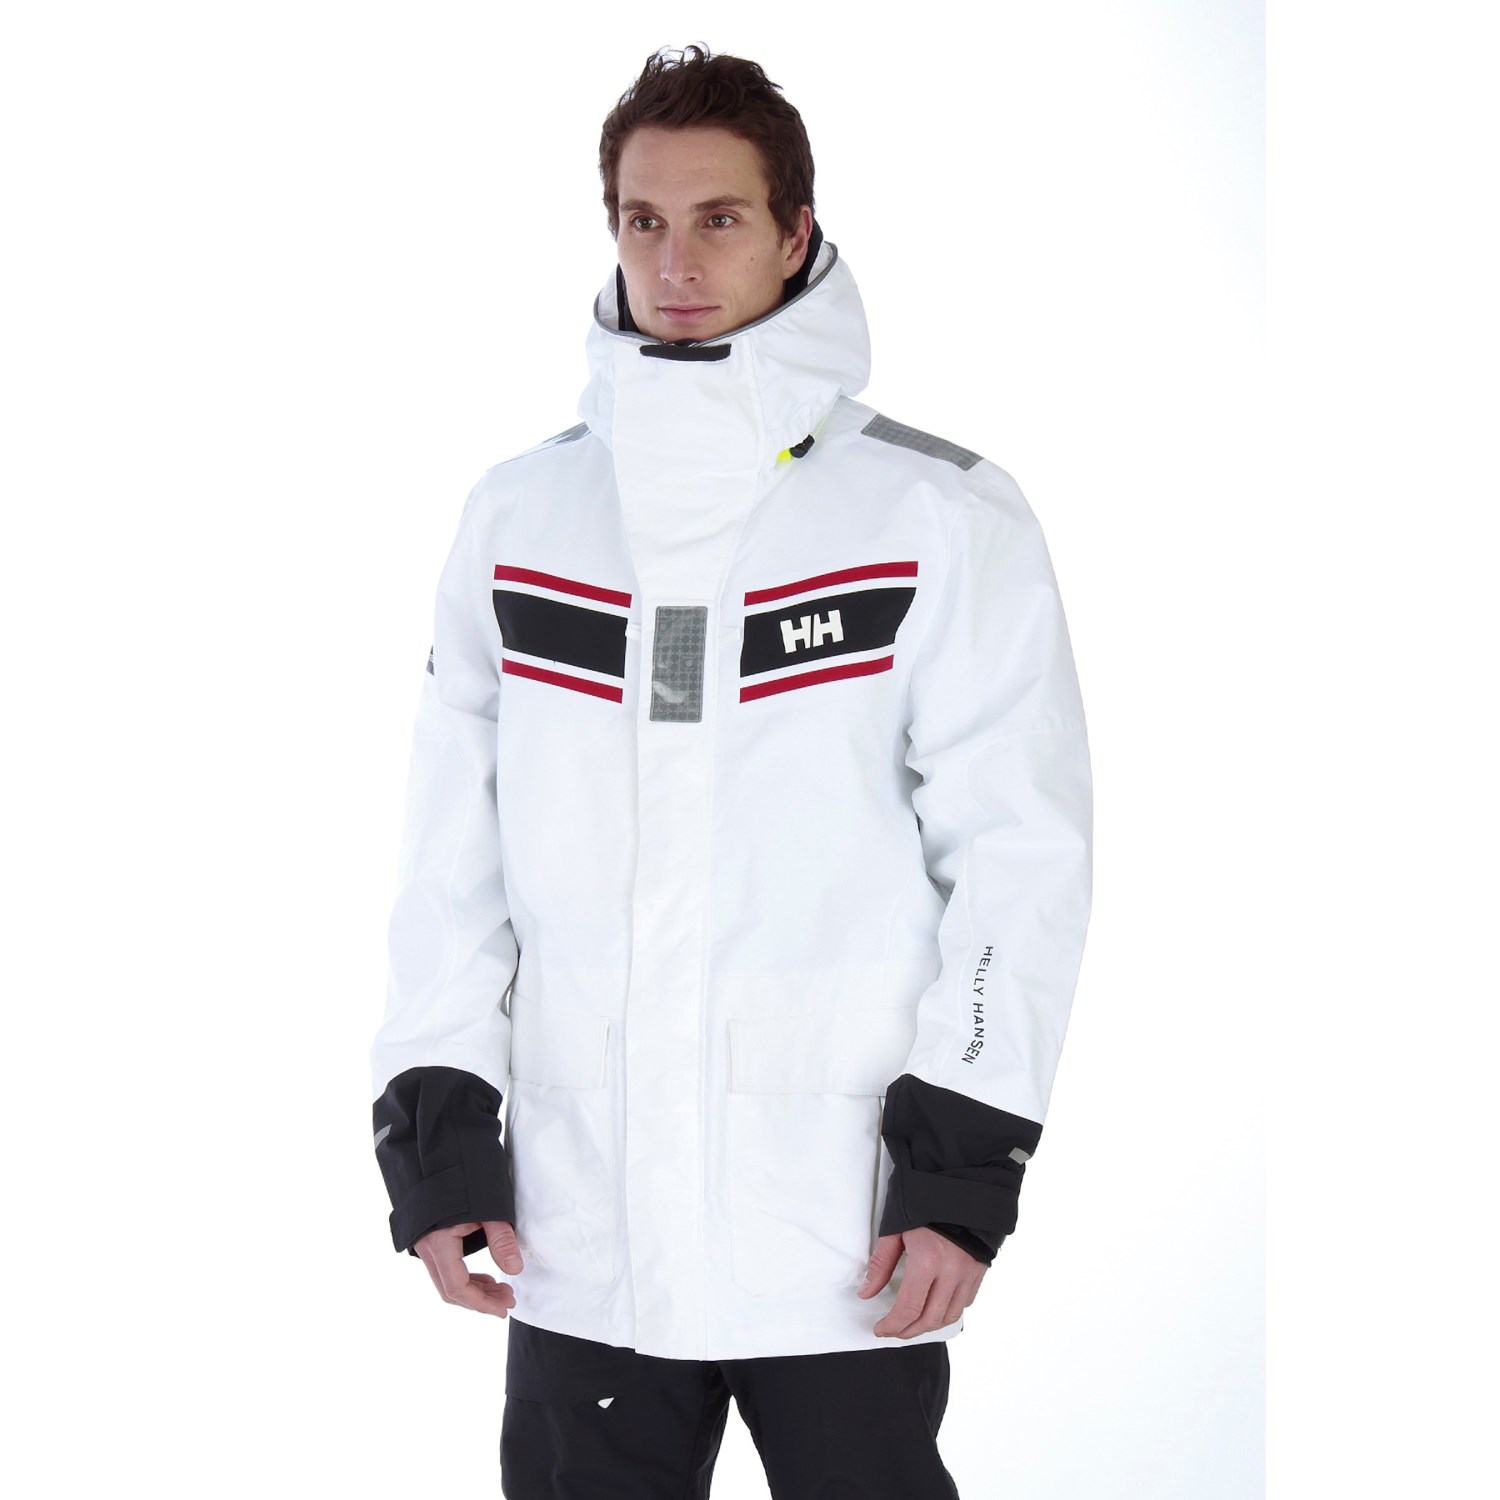 Helly Hansen Skagen Offshore Jacket (For Men) 4170P - Save 30%